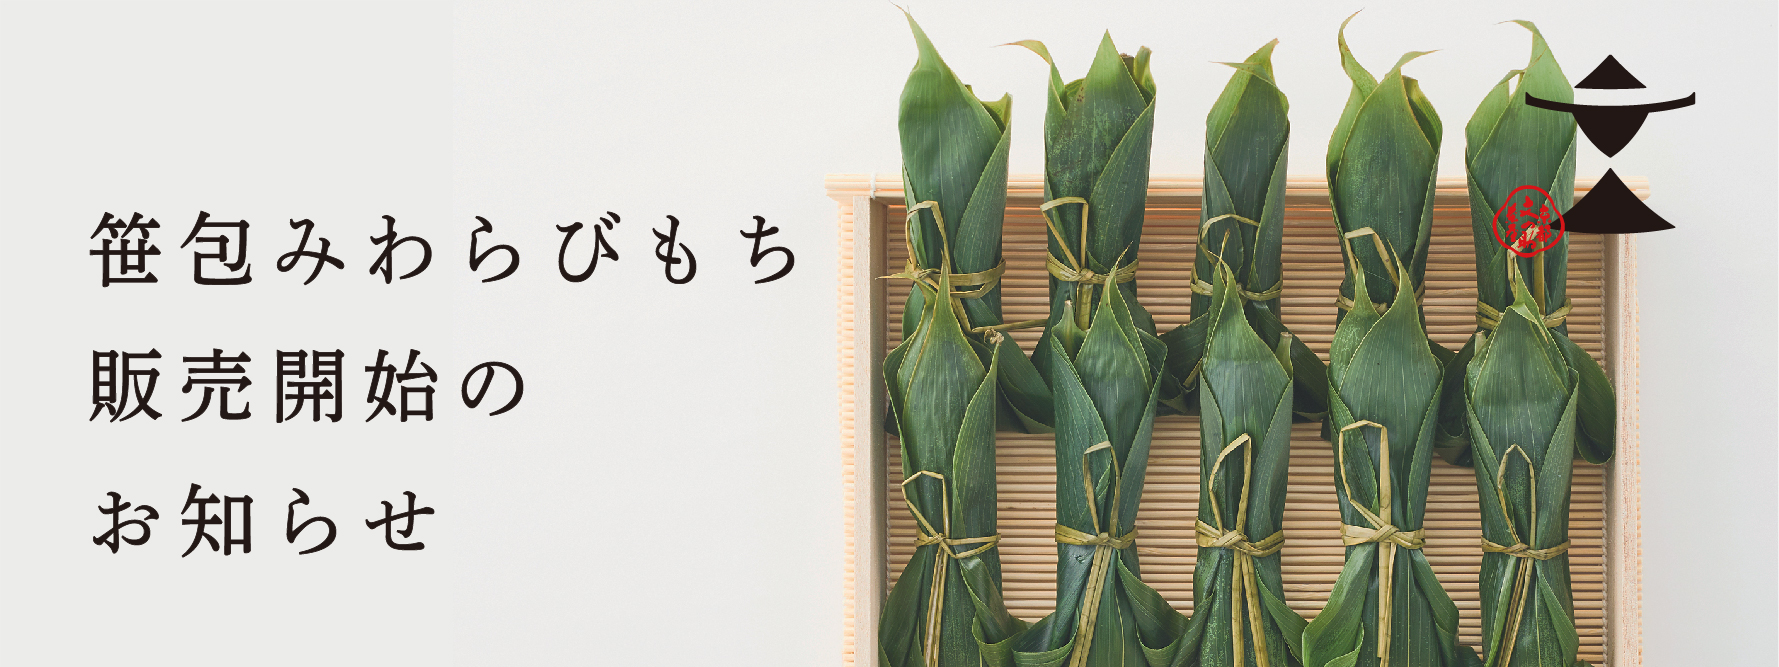 【夏季限定】笹包みわらびもち販売開始のお知らせ